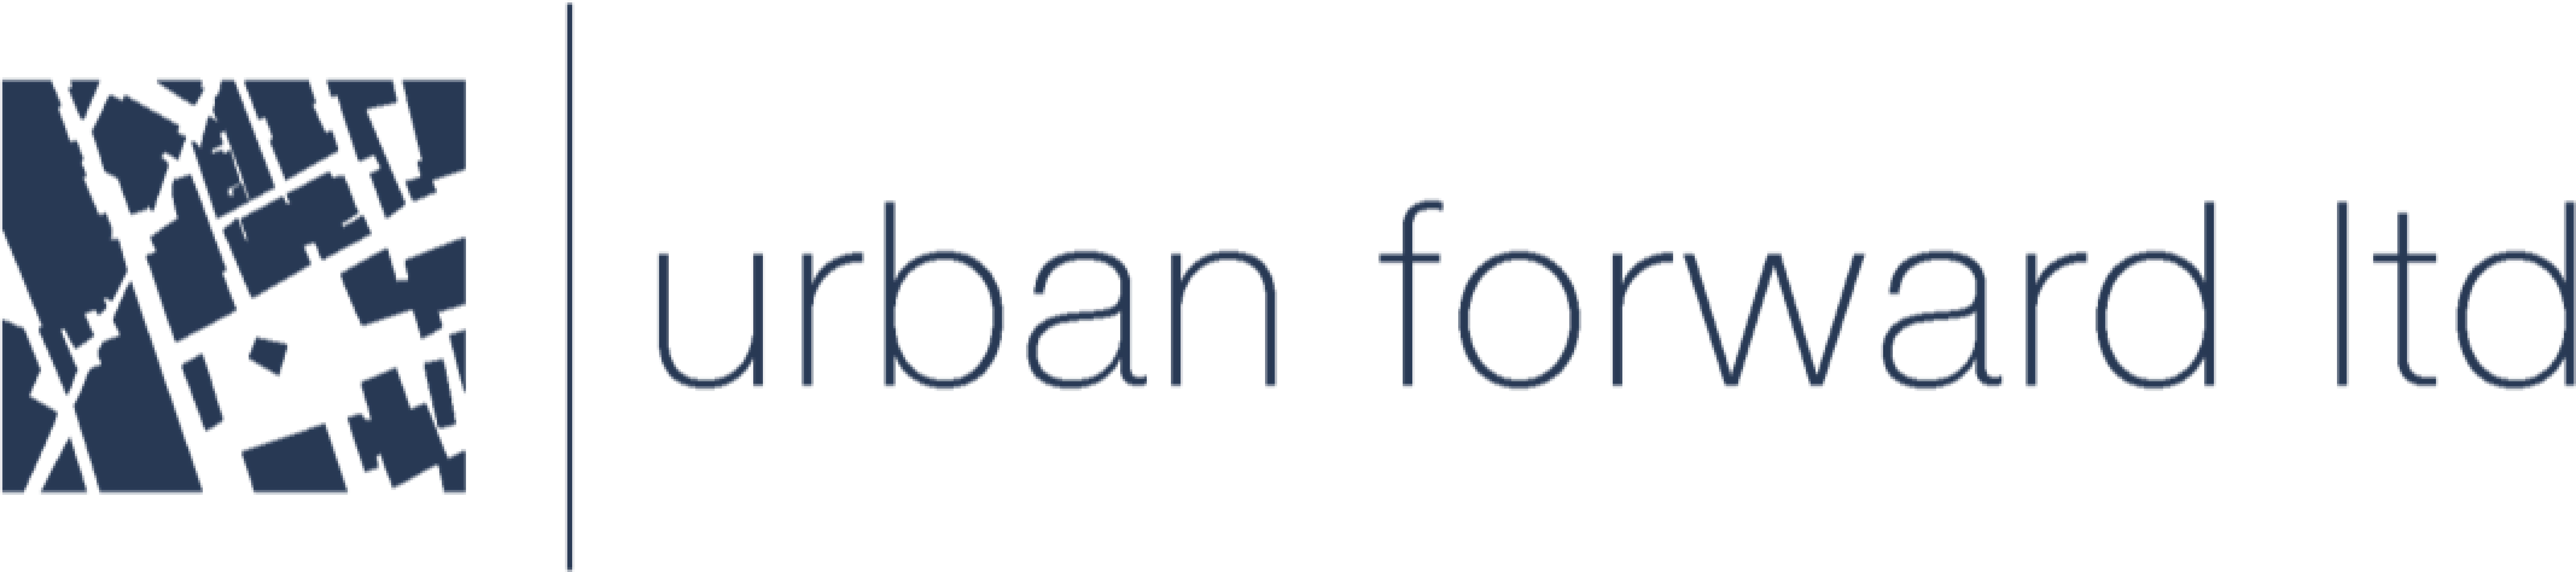 Urban Forward Ltd logo